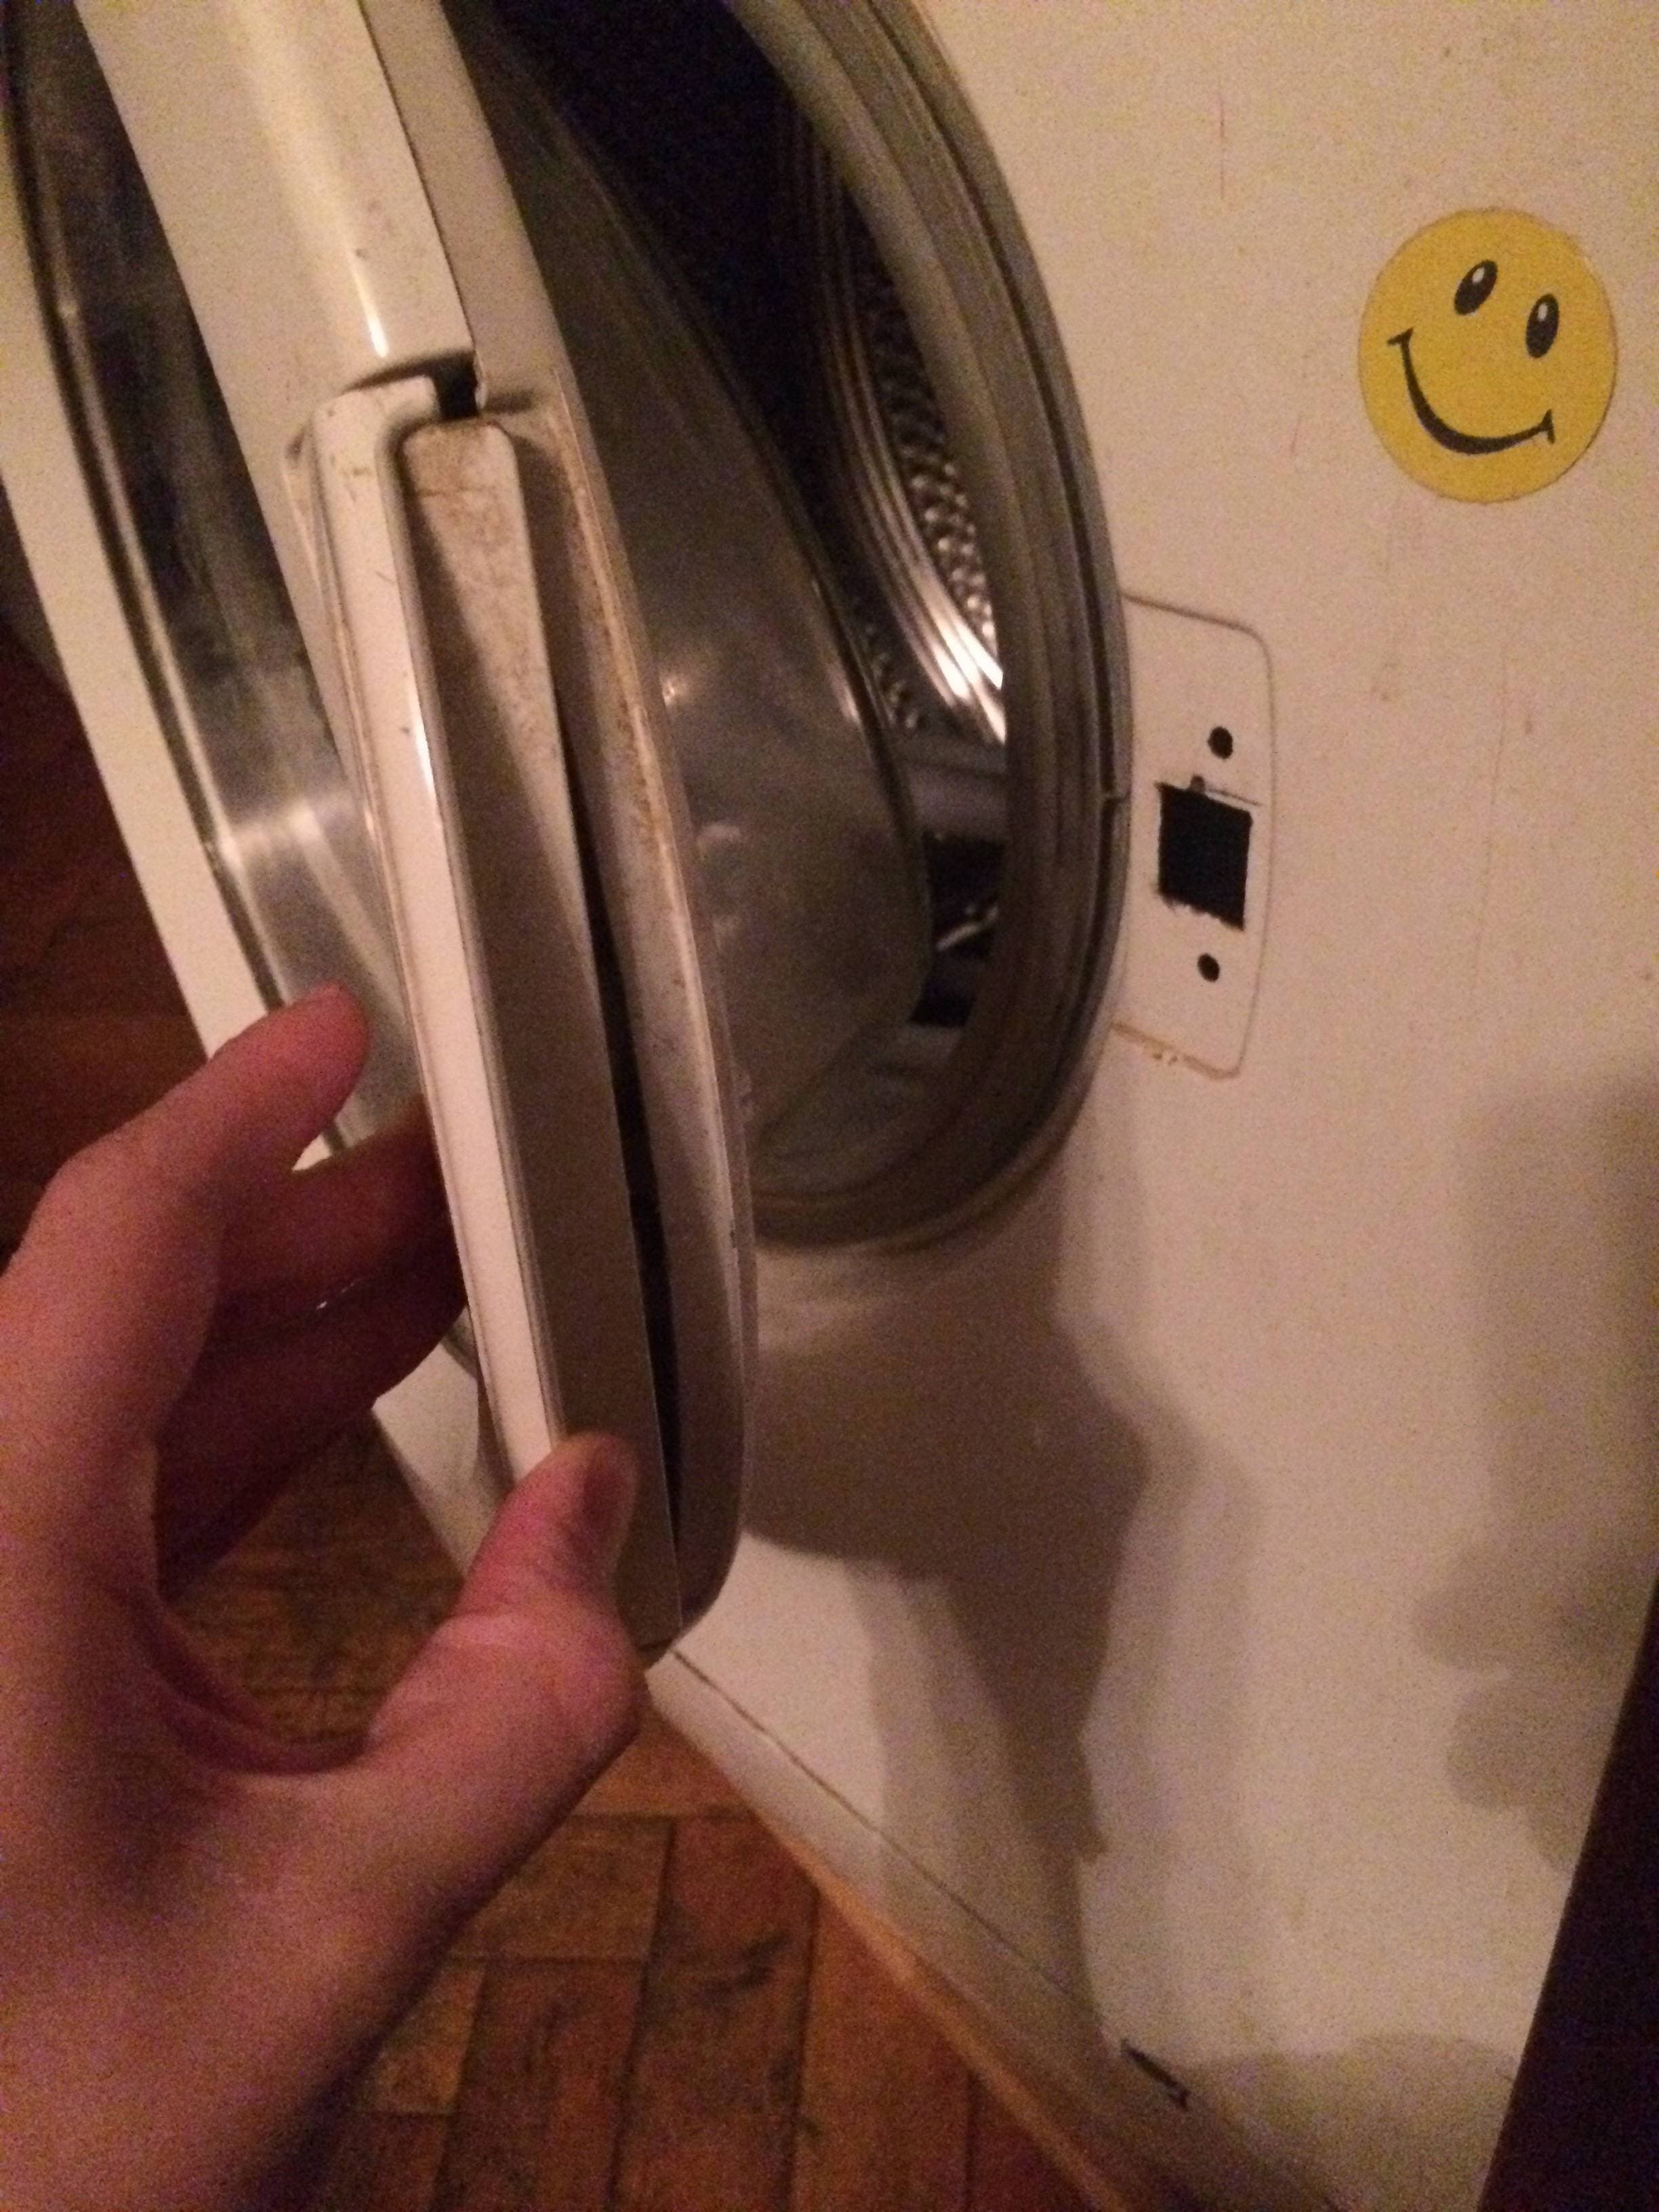 Как открыть дверь стиральной машины индезит